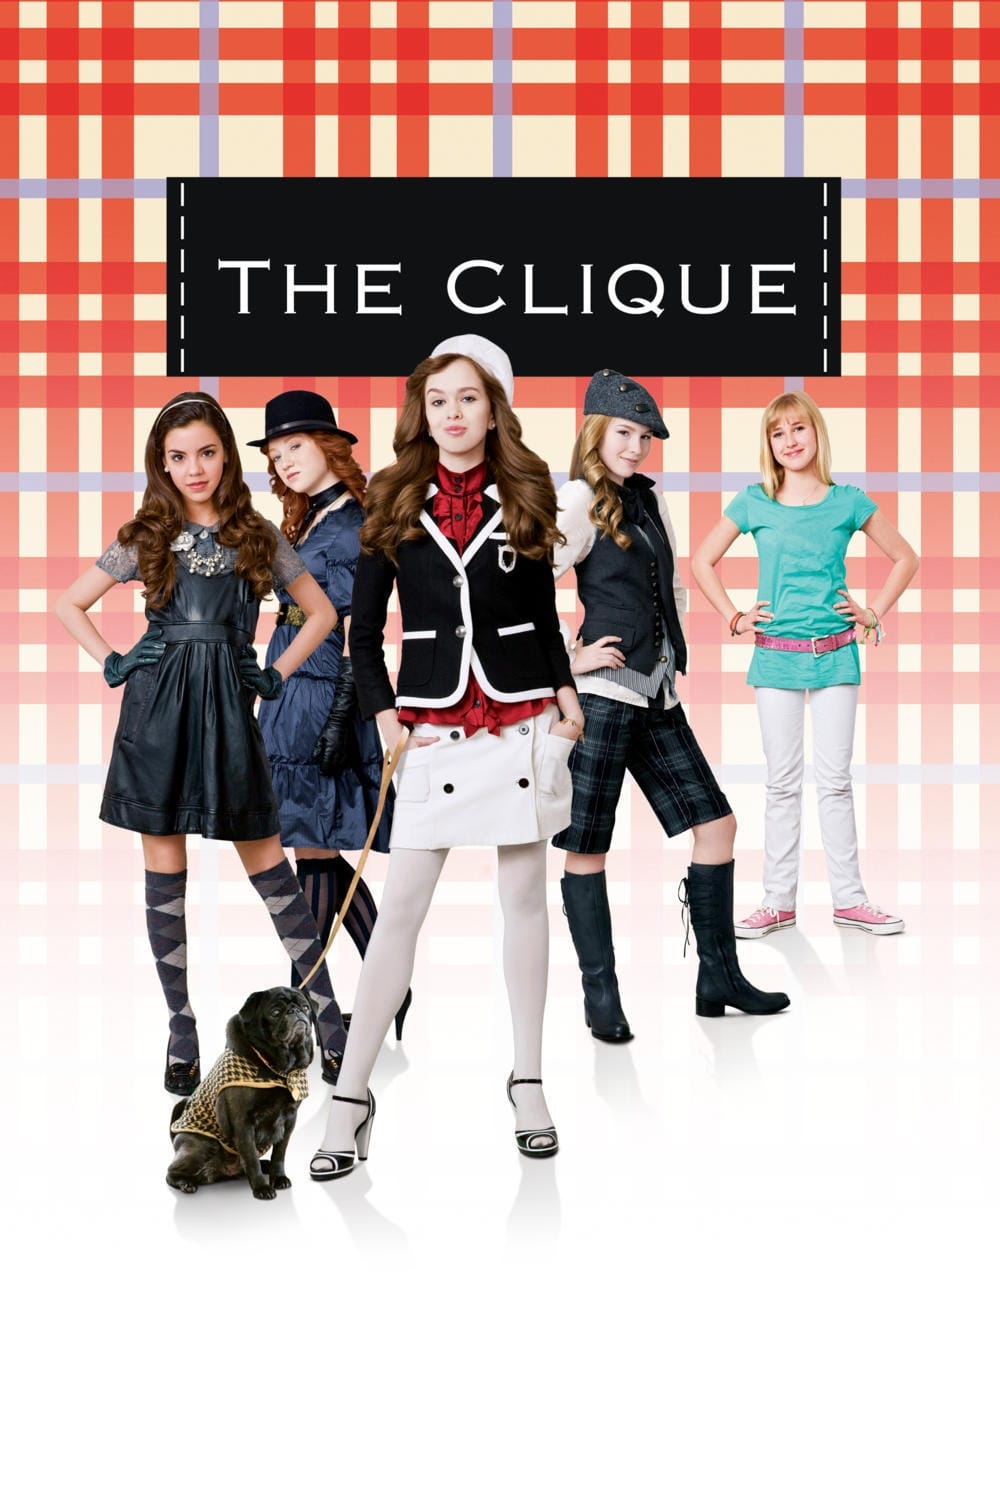 The Clique film